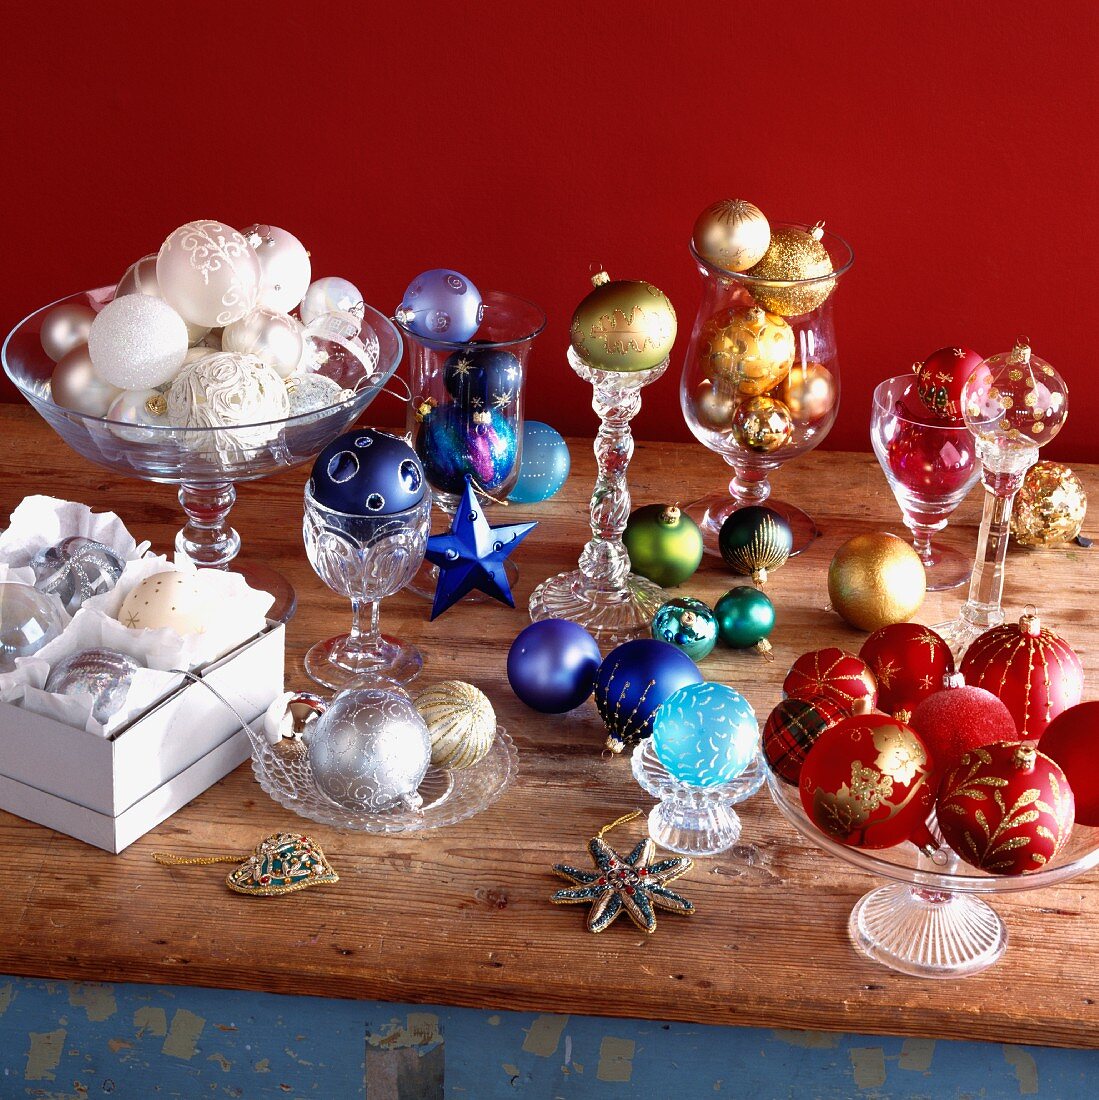 Farbig sortierte Weihnachtskugeln in Glasgefässen, Pappschachtel und lose auf Holztisch gelegt